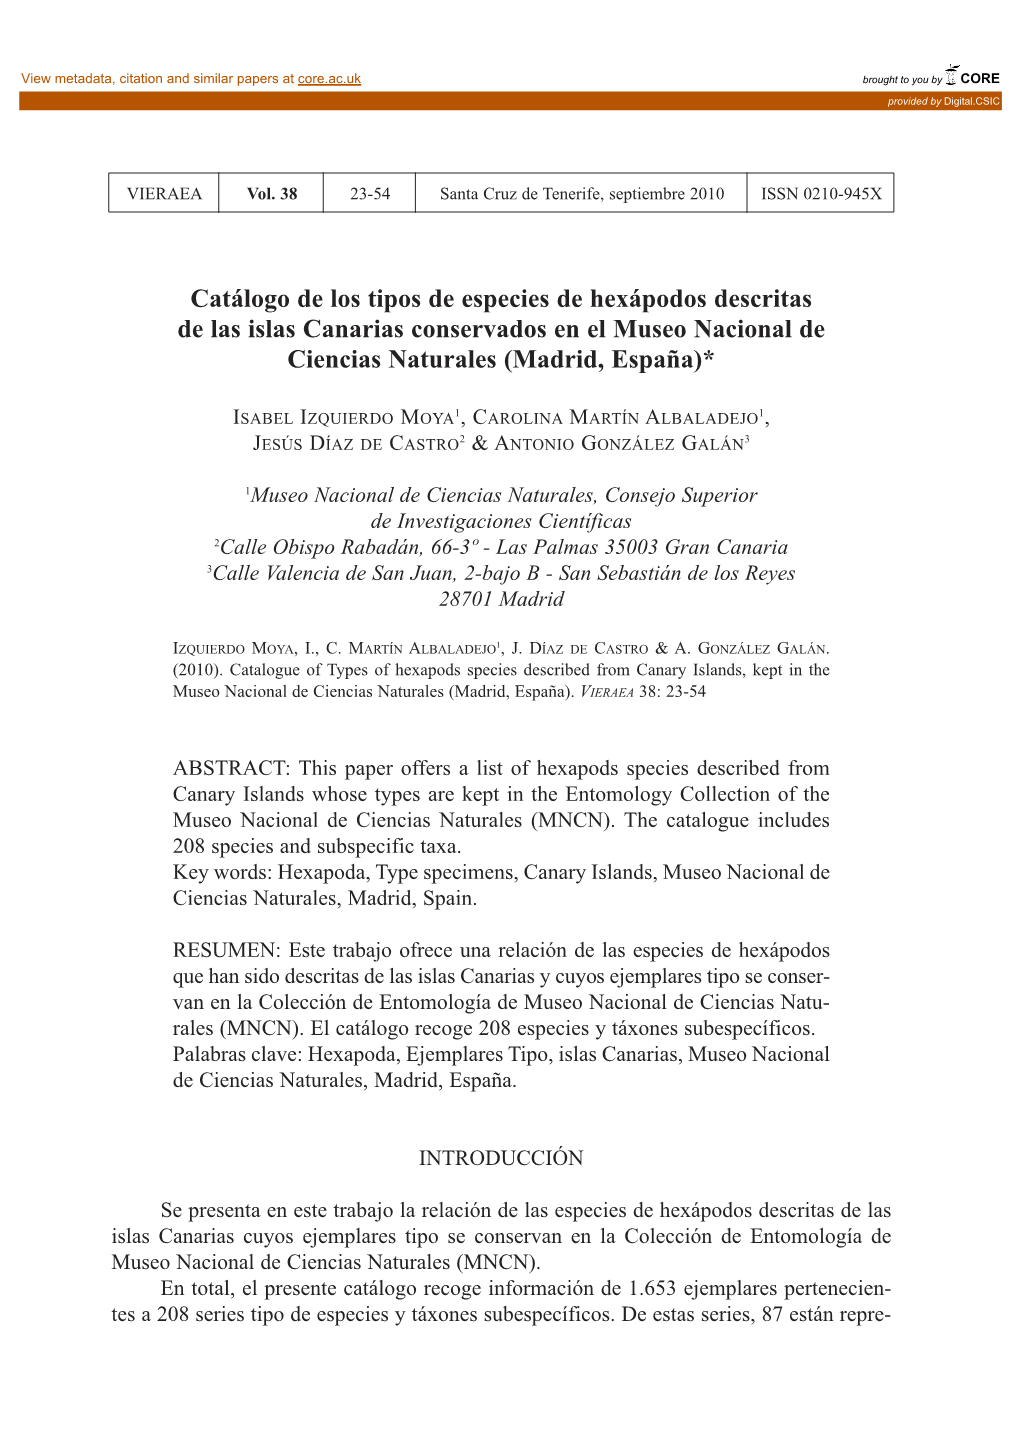 Catálogo De Los Tipos De Especies De Hexápodos Descritas De Las Islas Canarias Conservados En El Museo Nacional De Ciencias Naturales (Madrid, España)*